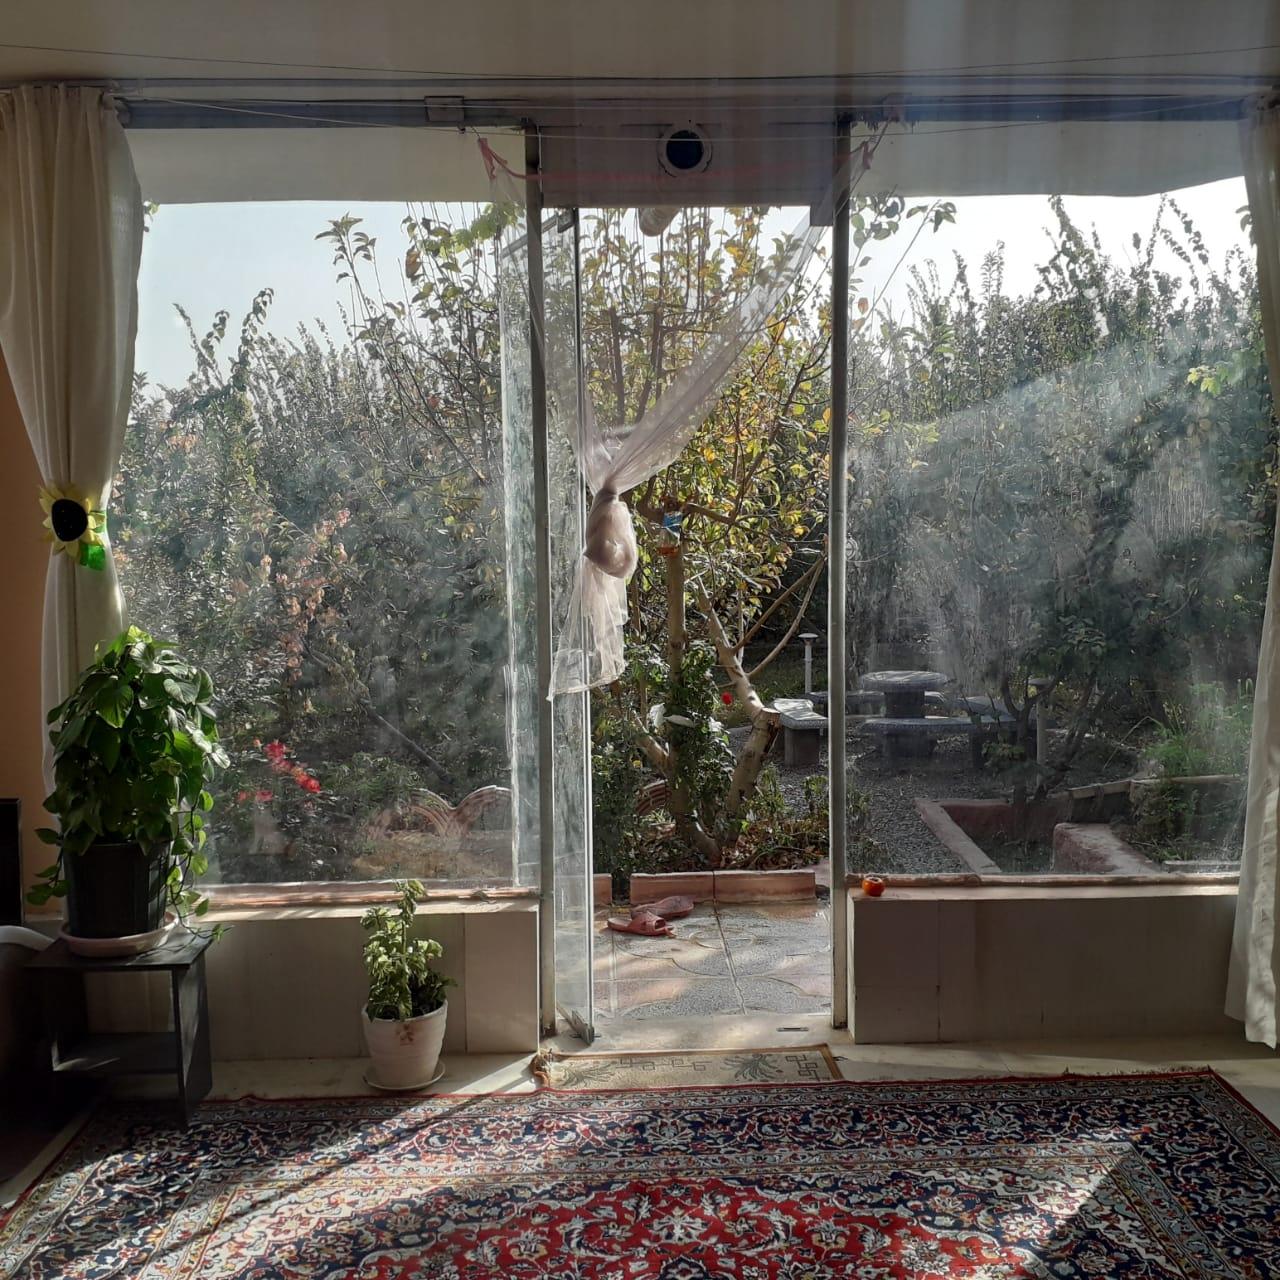 اجاره ویلا باغ با استخر سرپوشیده در خمینی شهر